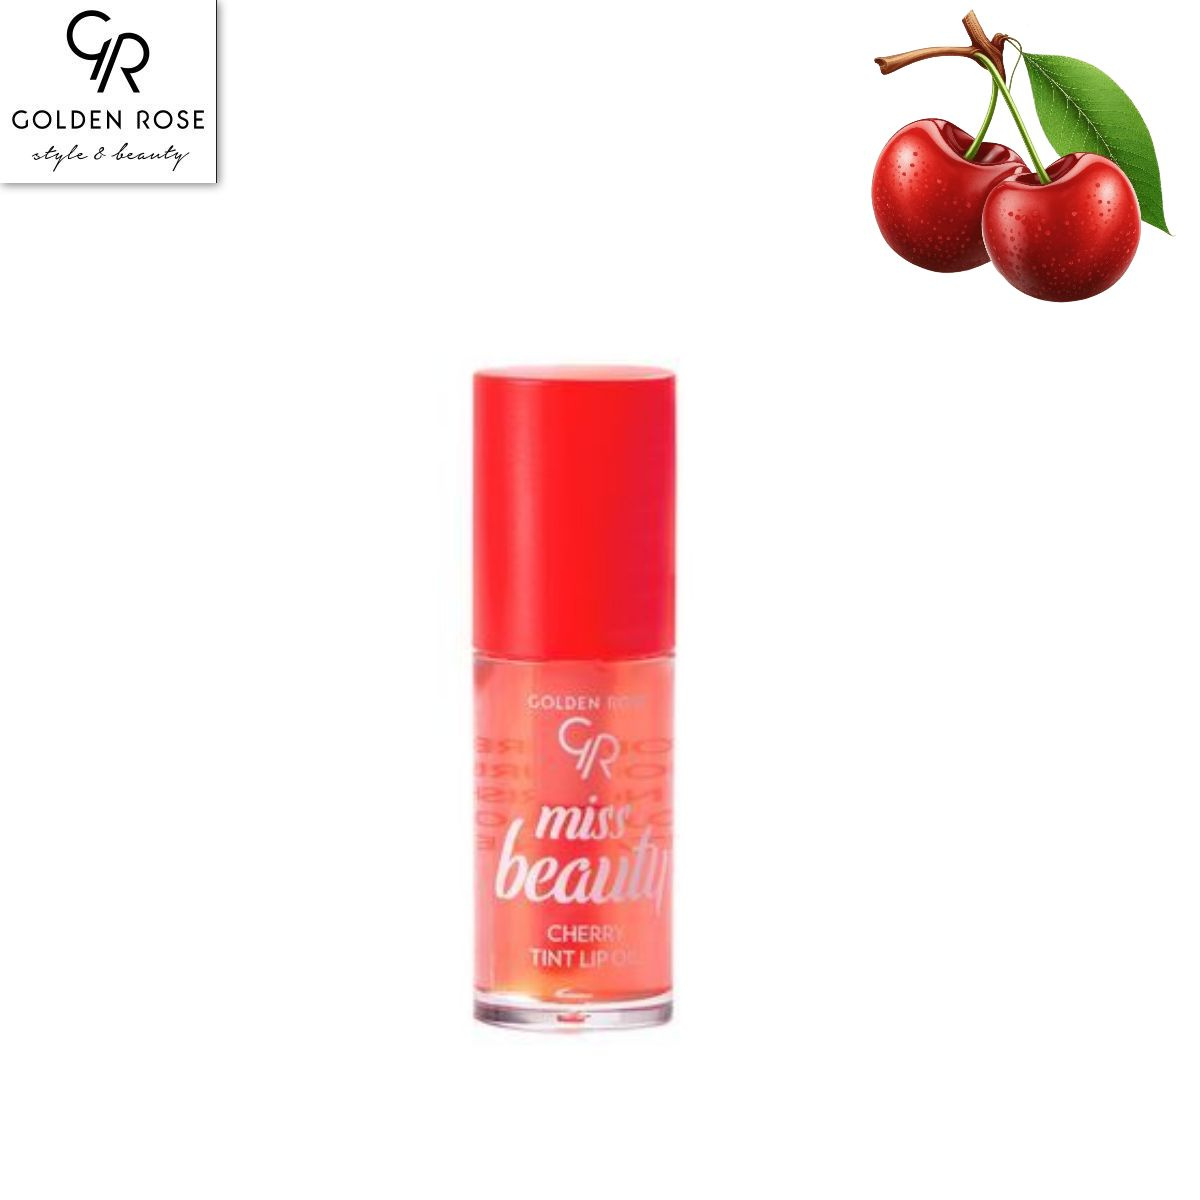 Тинт-масло для губ -уникальная веганская формула масла для губ. идеальная смесь вишневого / клубничного масел, масла жожоба, витамина Е и увлажняющего агента питает и увлажняет губы, как бальзам, сияет, как блеск. Технология Color reviver улучшает естественный цвет губ с помощью розового оттенка, который подбирается в соответствии с вашим уровнем PH губ. Большой прецизионный аппликатор придает губам мягкость и гладкость с блестящим, нелипким покрытием.  Масло-тинт для губ - это инновационный продукт, который сочетает в себе свойства губной помады и увлажняющего масла. Он создан для того, чтобы придать губам яркий и стойкий цвет, а также увлажнить и смягчить их.  Масло-тинт обладает легкой текстурой, которая нежно наносится на губы, не оставляя ощущения липкости или тяжести. Оно быстро впитывается и создает на губах тонкую, но стойкую пленку, которая сохраняет цвет в течение длительного времени.  Одной из главных особенностей масла-тинта является его способность подстраиваться под естественный цвет губ, создавая индивидуальный оттенок. При нанесении масло-тинта на губы, оно реагирует с кислородом в воздухе и меняет свой цвет, подстраиваясь под естественный пигмент губ. Таким образом, каждый оттенок масла-тинта будет выглядеть уникально на каждом человеке.  Кроме того, масло-тинт обогащено увлажняющими компонентами, такими как масло ши, витамин Е и алоэ вера, которые питают и увлажняют губы, предотвращая их сухость и шелушение. Они делают губы мягкими и гладкими на ощупь, придавая им здоровый и ухоженный вид.  Масло-тинт для губ - это отличный выбор для тех, кто хочет получить яркий и стойкий цвет губ, не жертвуя их увлажнением и комфортом. Он подходит для ежедневного использования и поможет создать неповторимый образ.